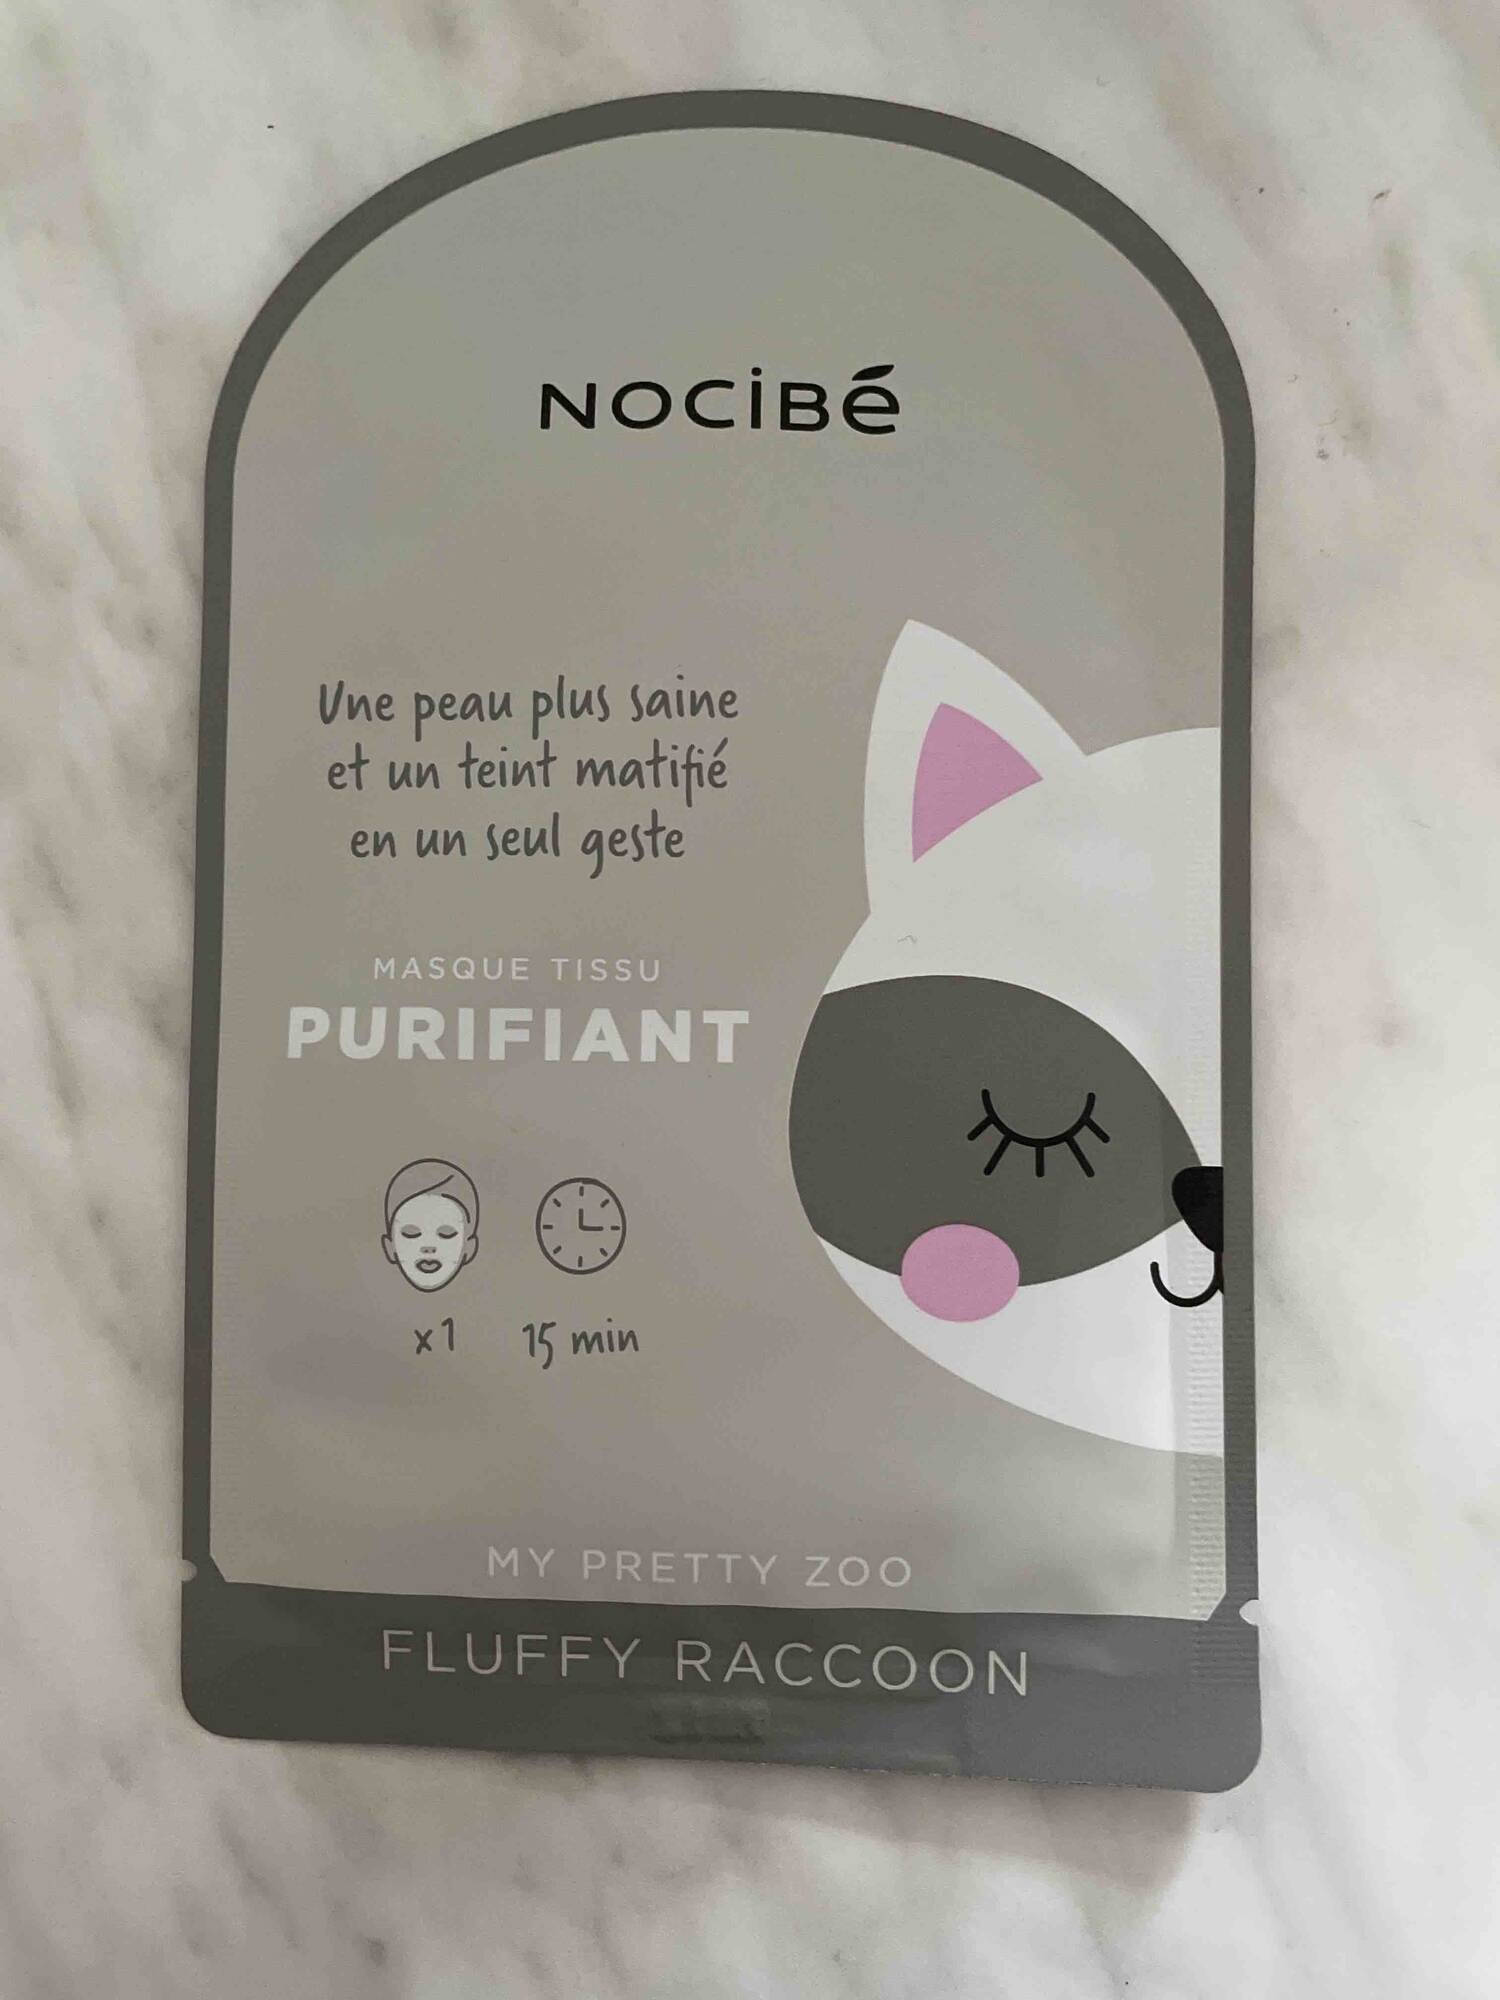 NOCIBÉ - My pretty zoo Fluffy raccoon - Masque tissu purifiant